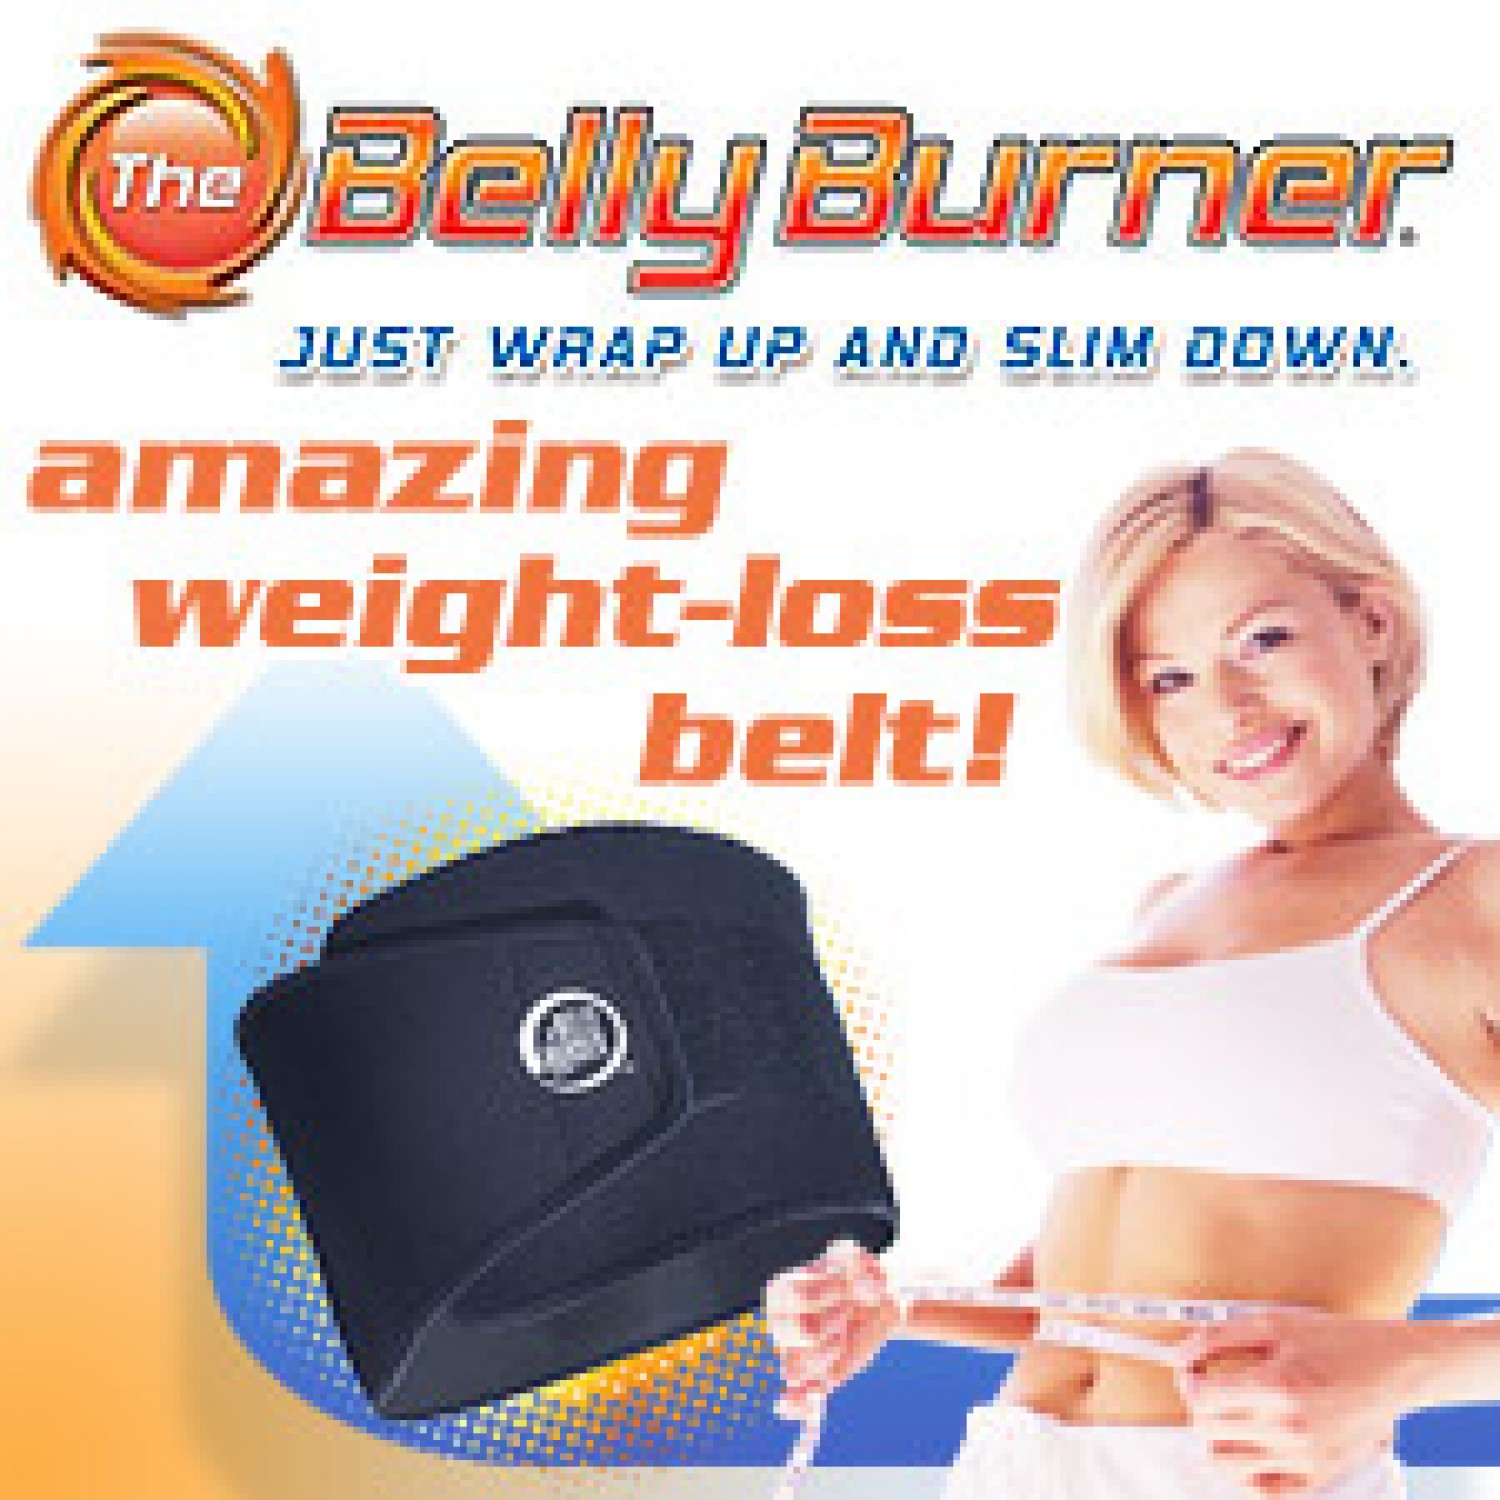 Belly Burner Weight Loss Belt